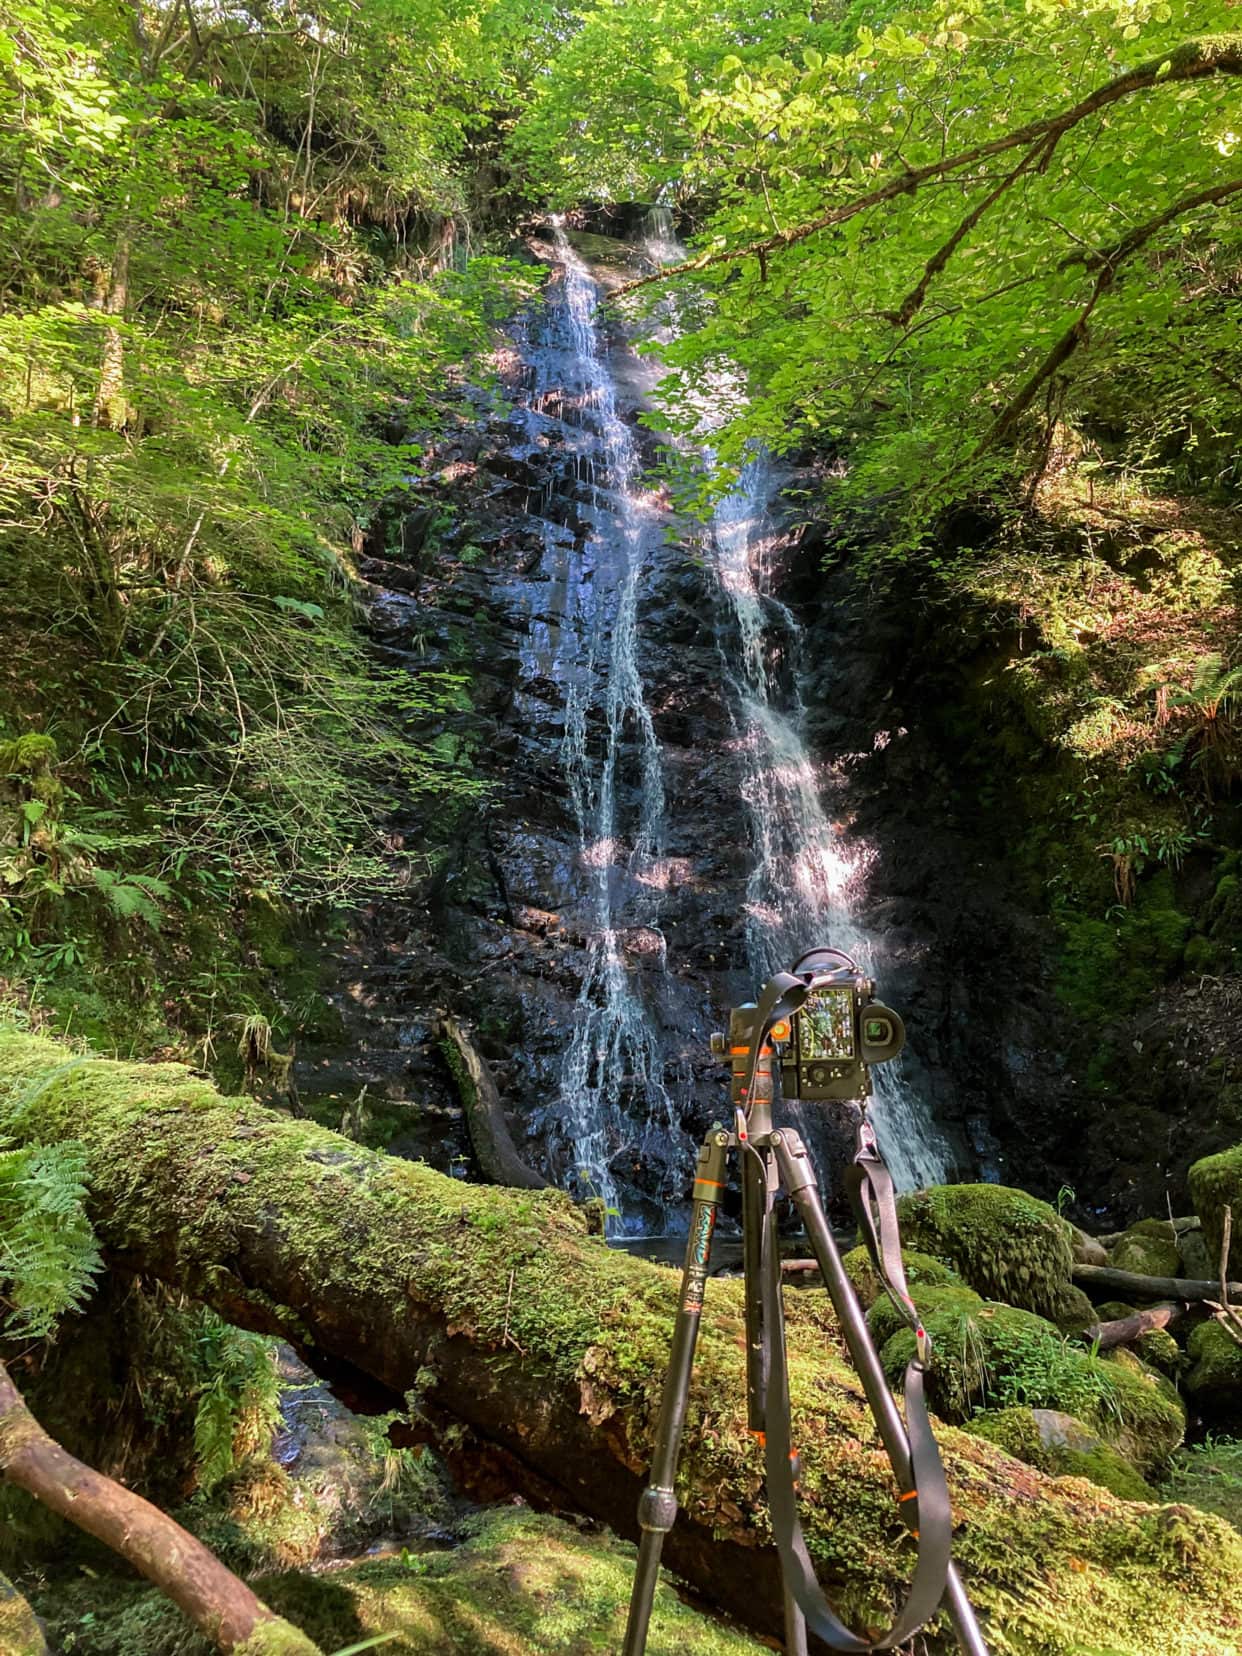 camera tripod set up to shoot a waterfall